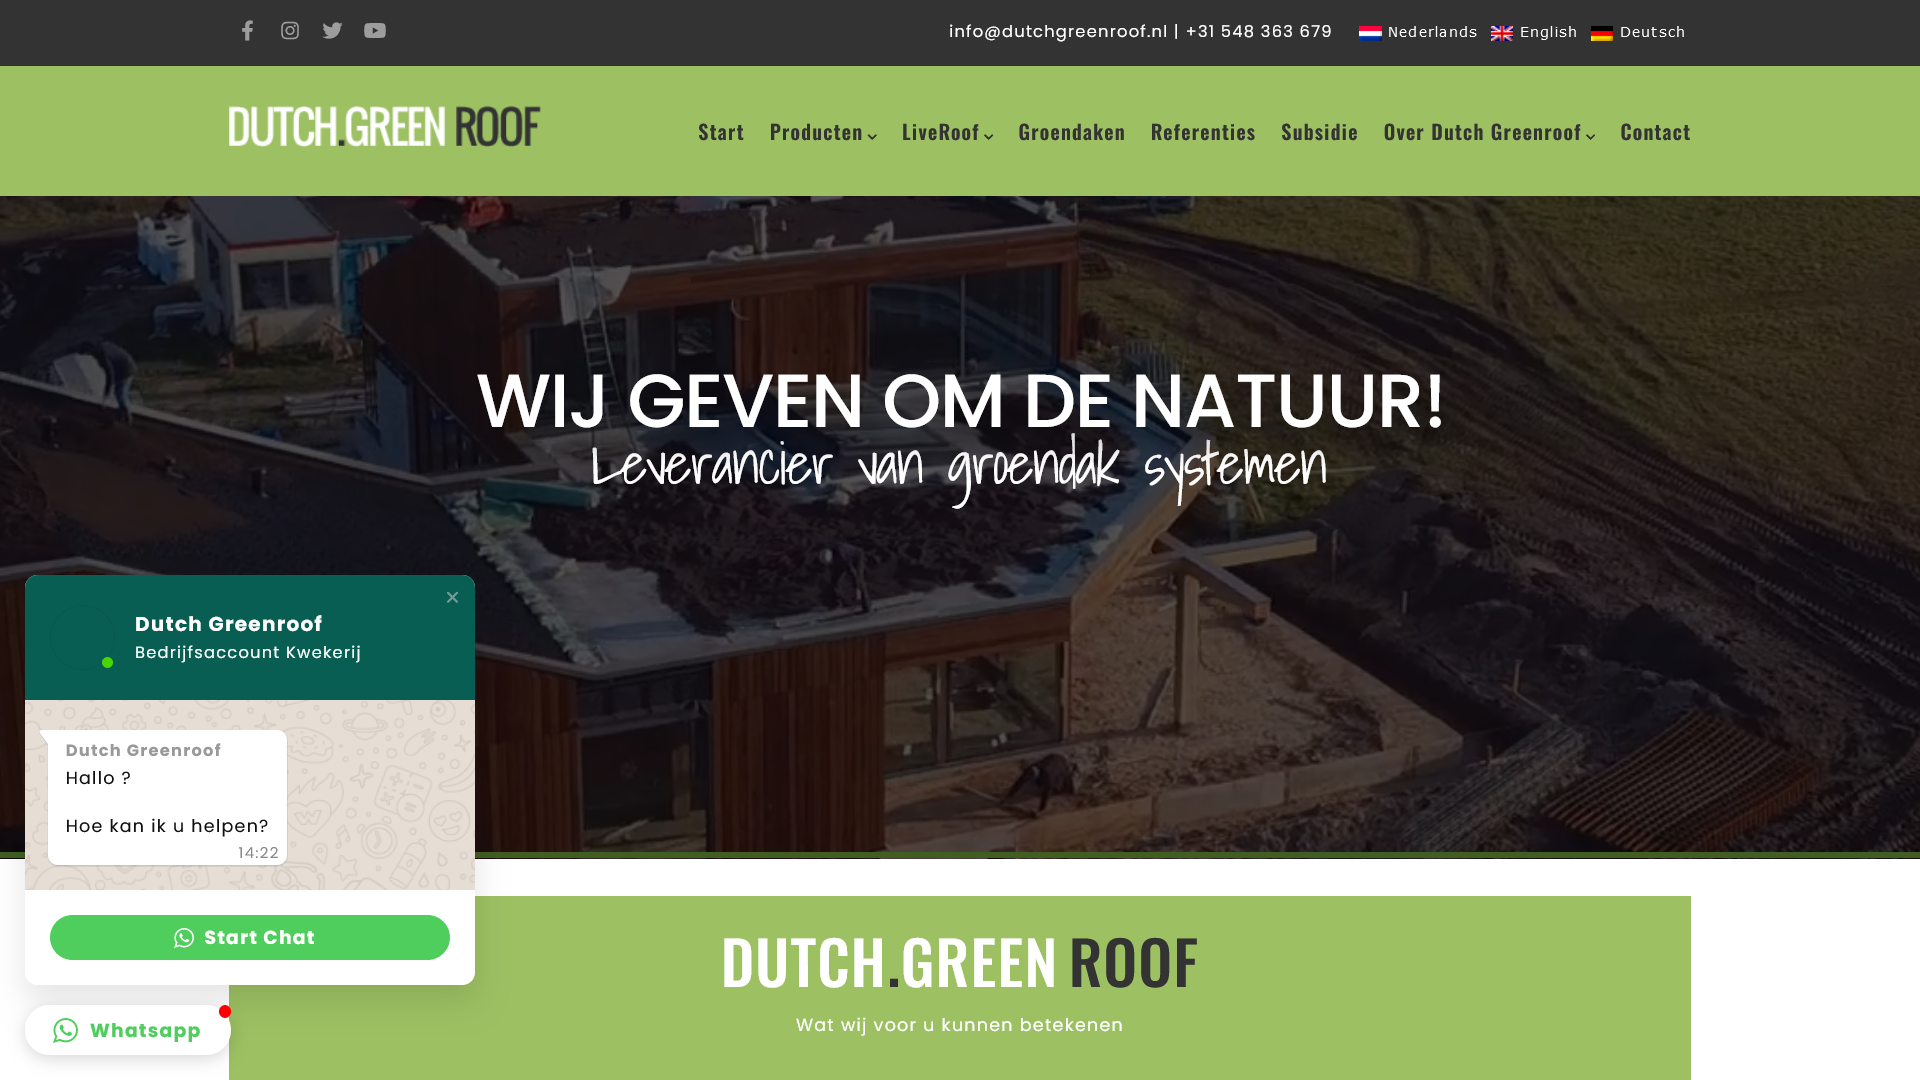 Dutch Greenroof